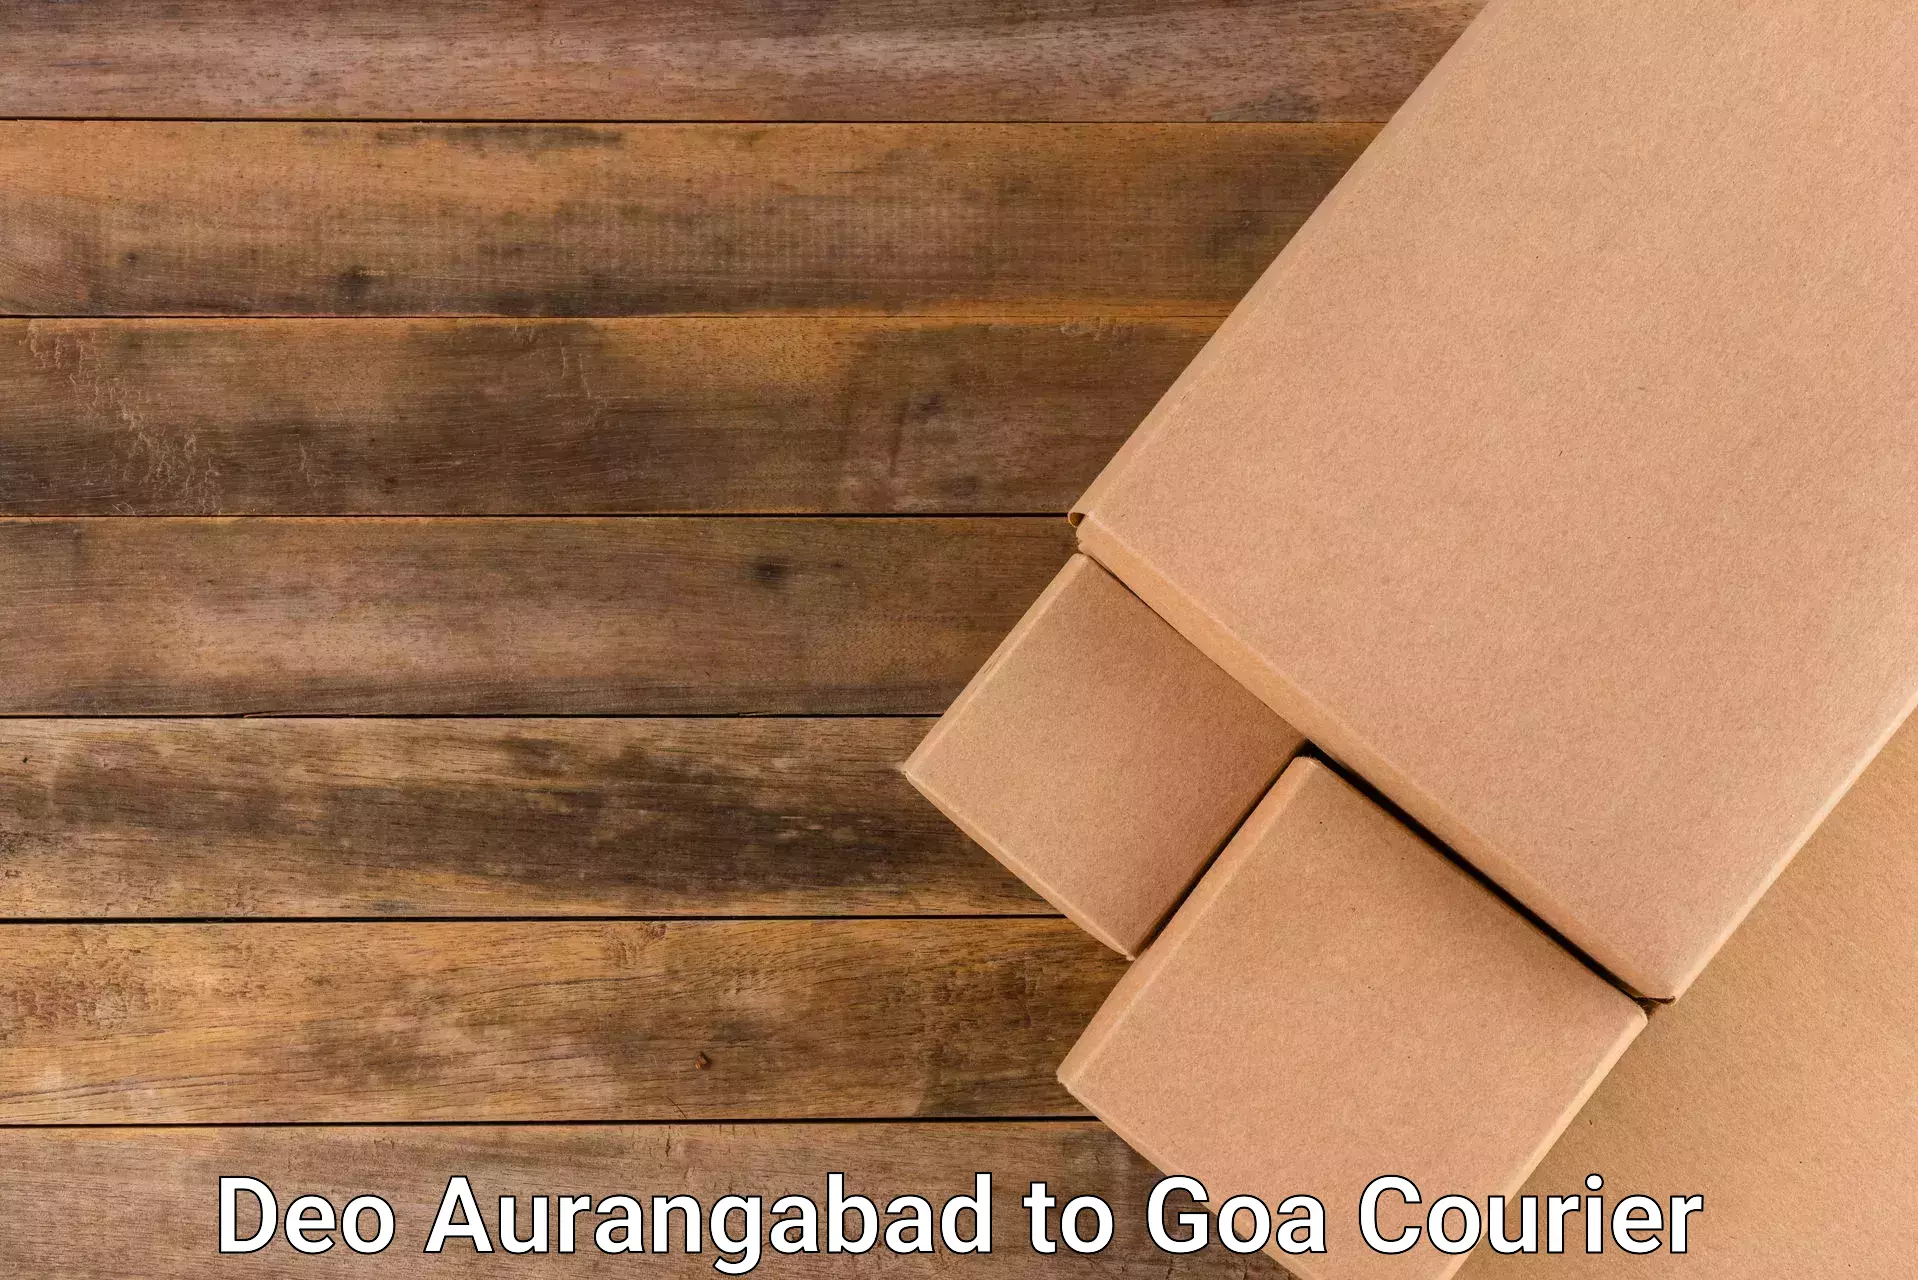 Reliable courier services Deo Aurangabad to Mormugao Port